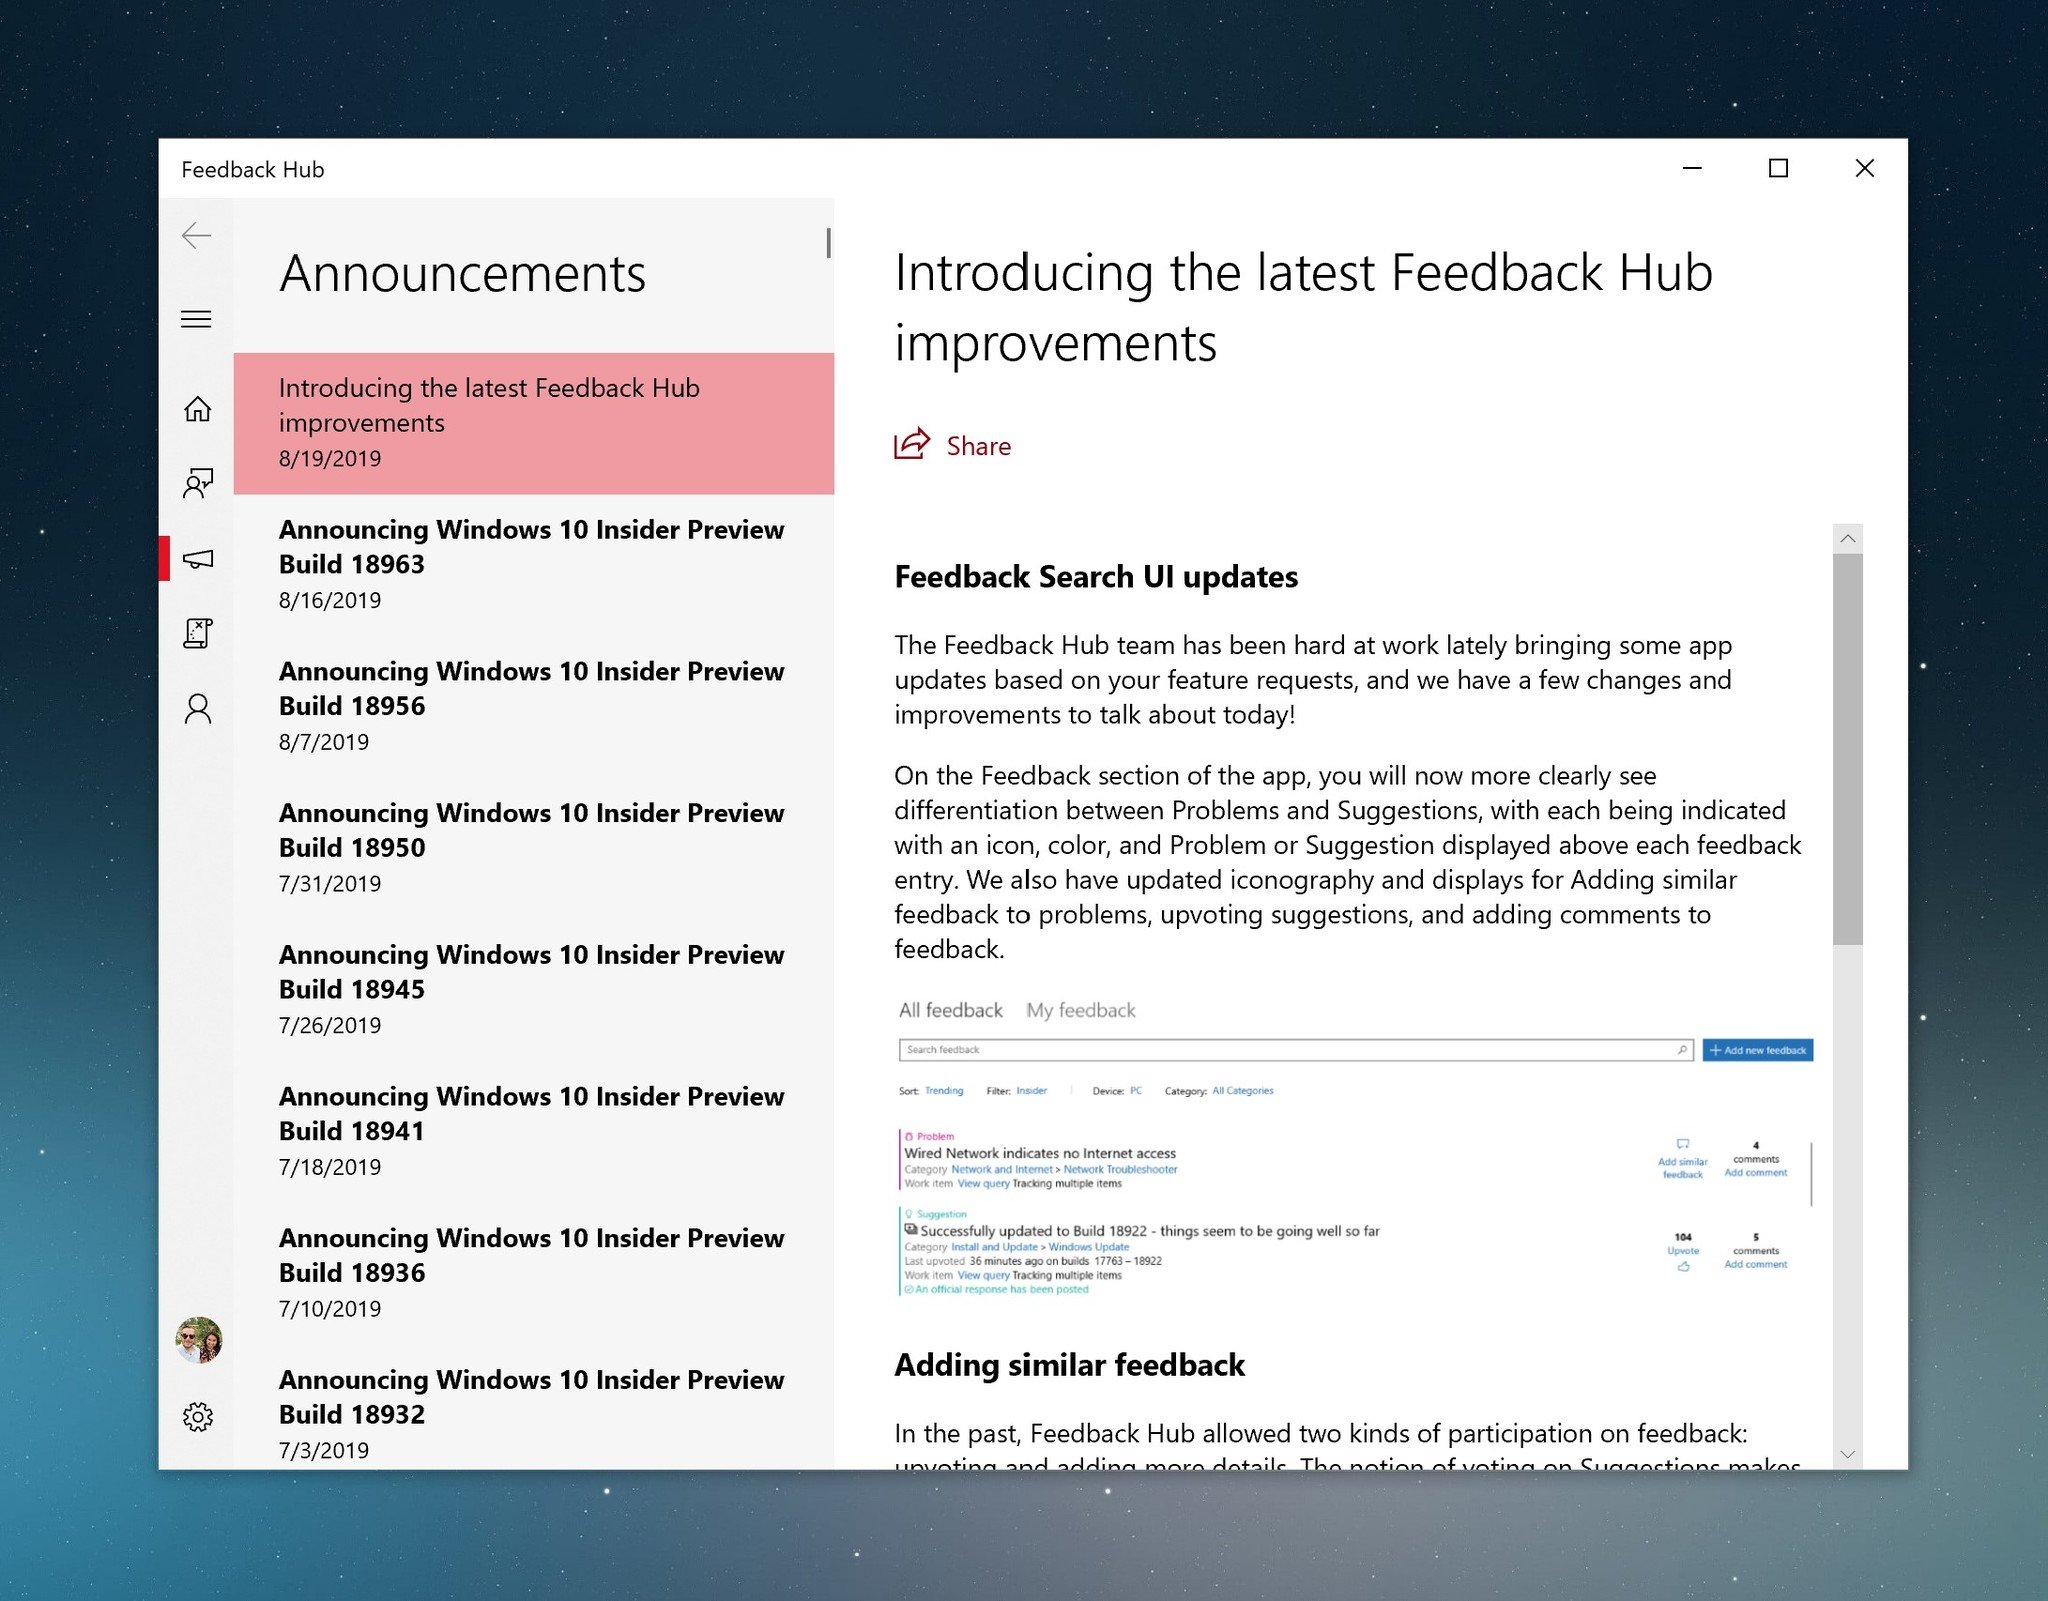 feedback-hub-improvements-aug-19-2019.jpg